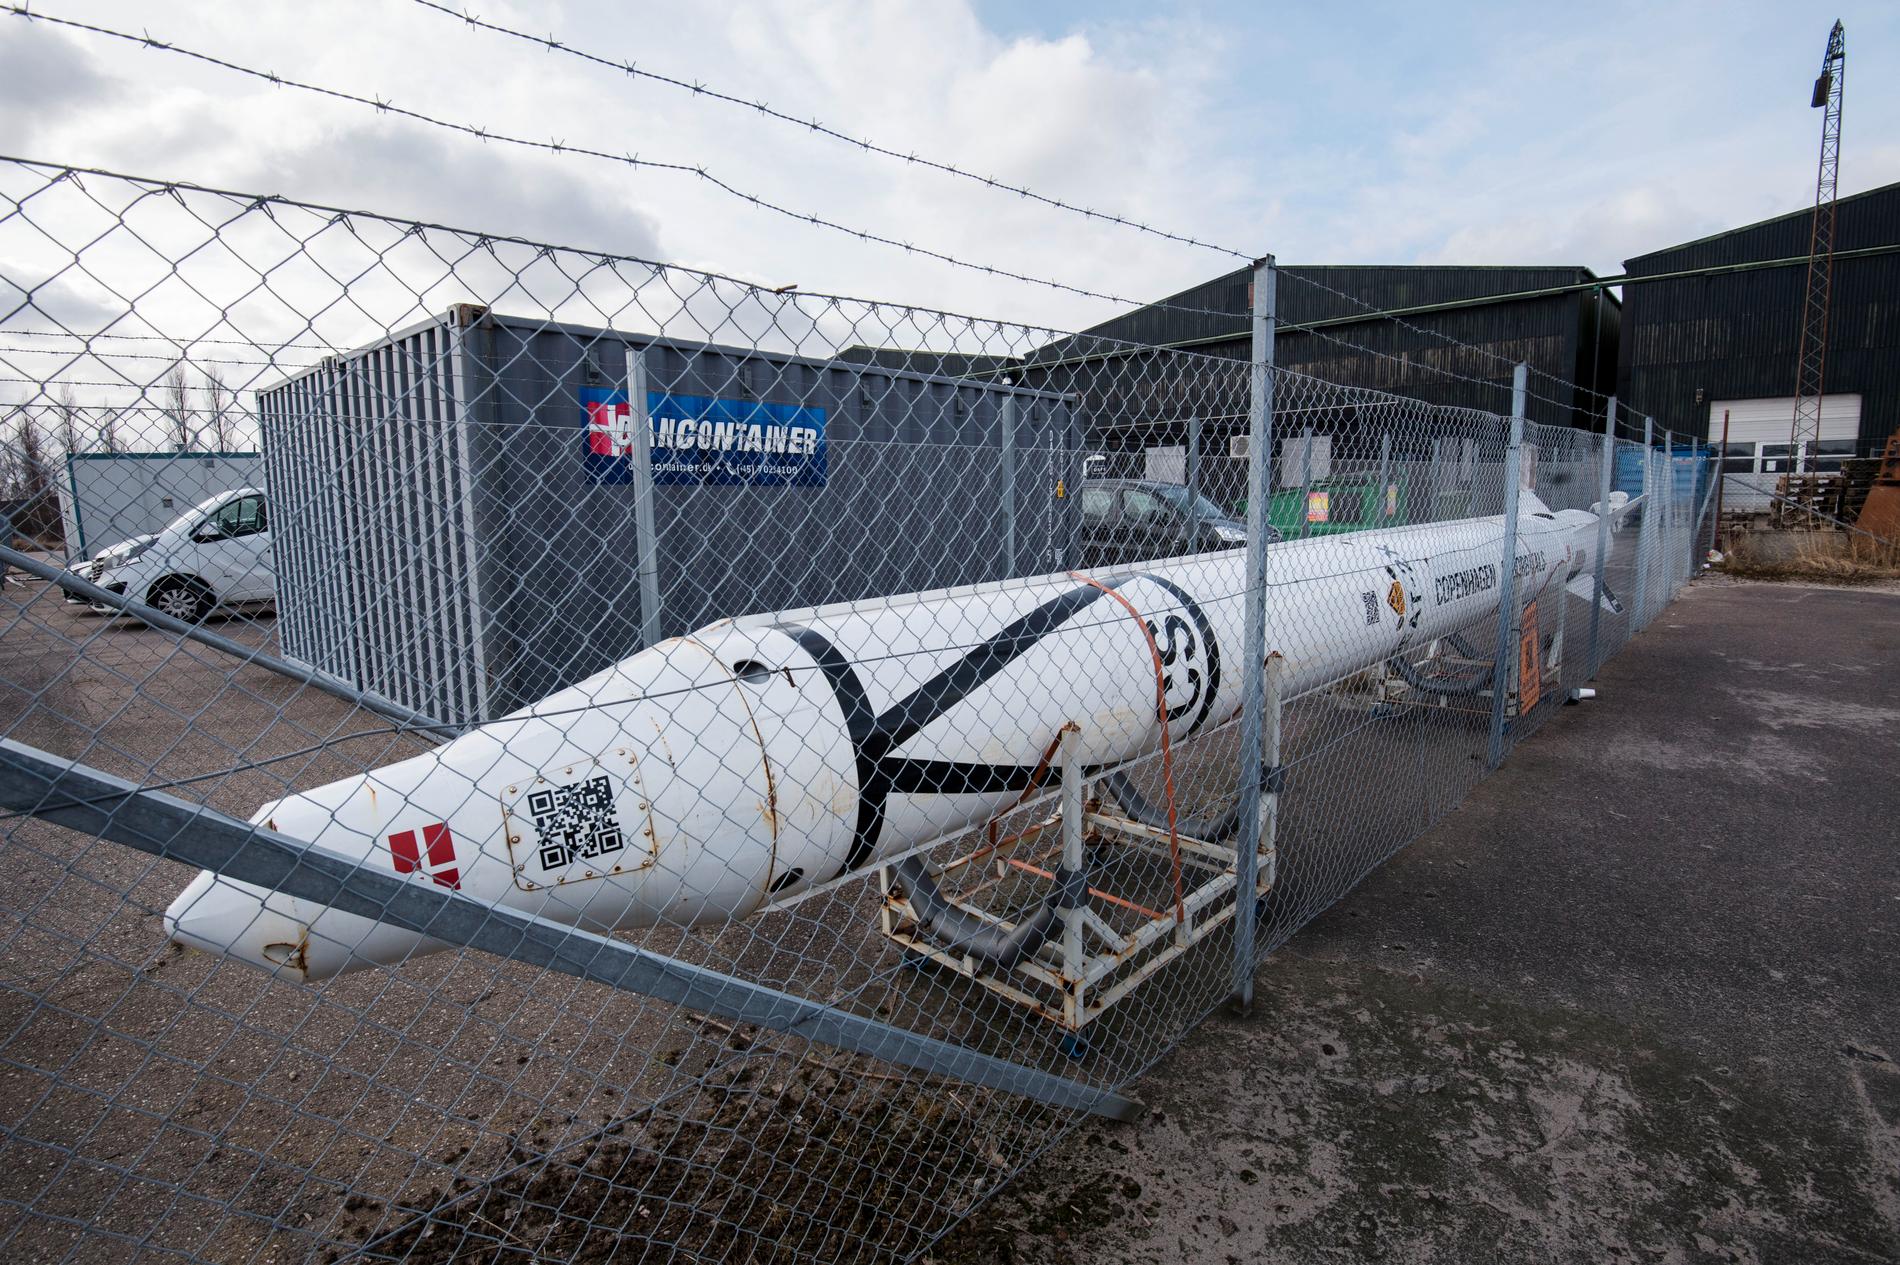 Copenhagen Suborbitals, som i flera år konkurrerade med Peter Madsen i en dansk rymdkapplöpning, fortsätter sin verksamhet. Lokalerna ligger granne med hangaren där Peter Madsen hade sitt rymdlaboratorium på Refshaleøen i Köpenhamn.